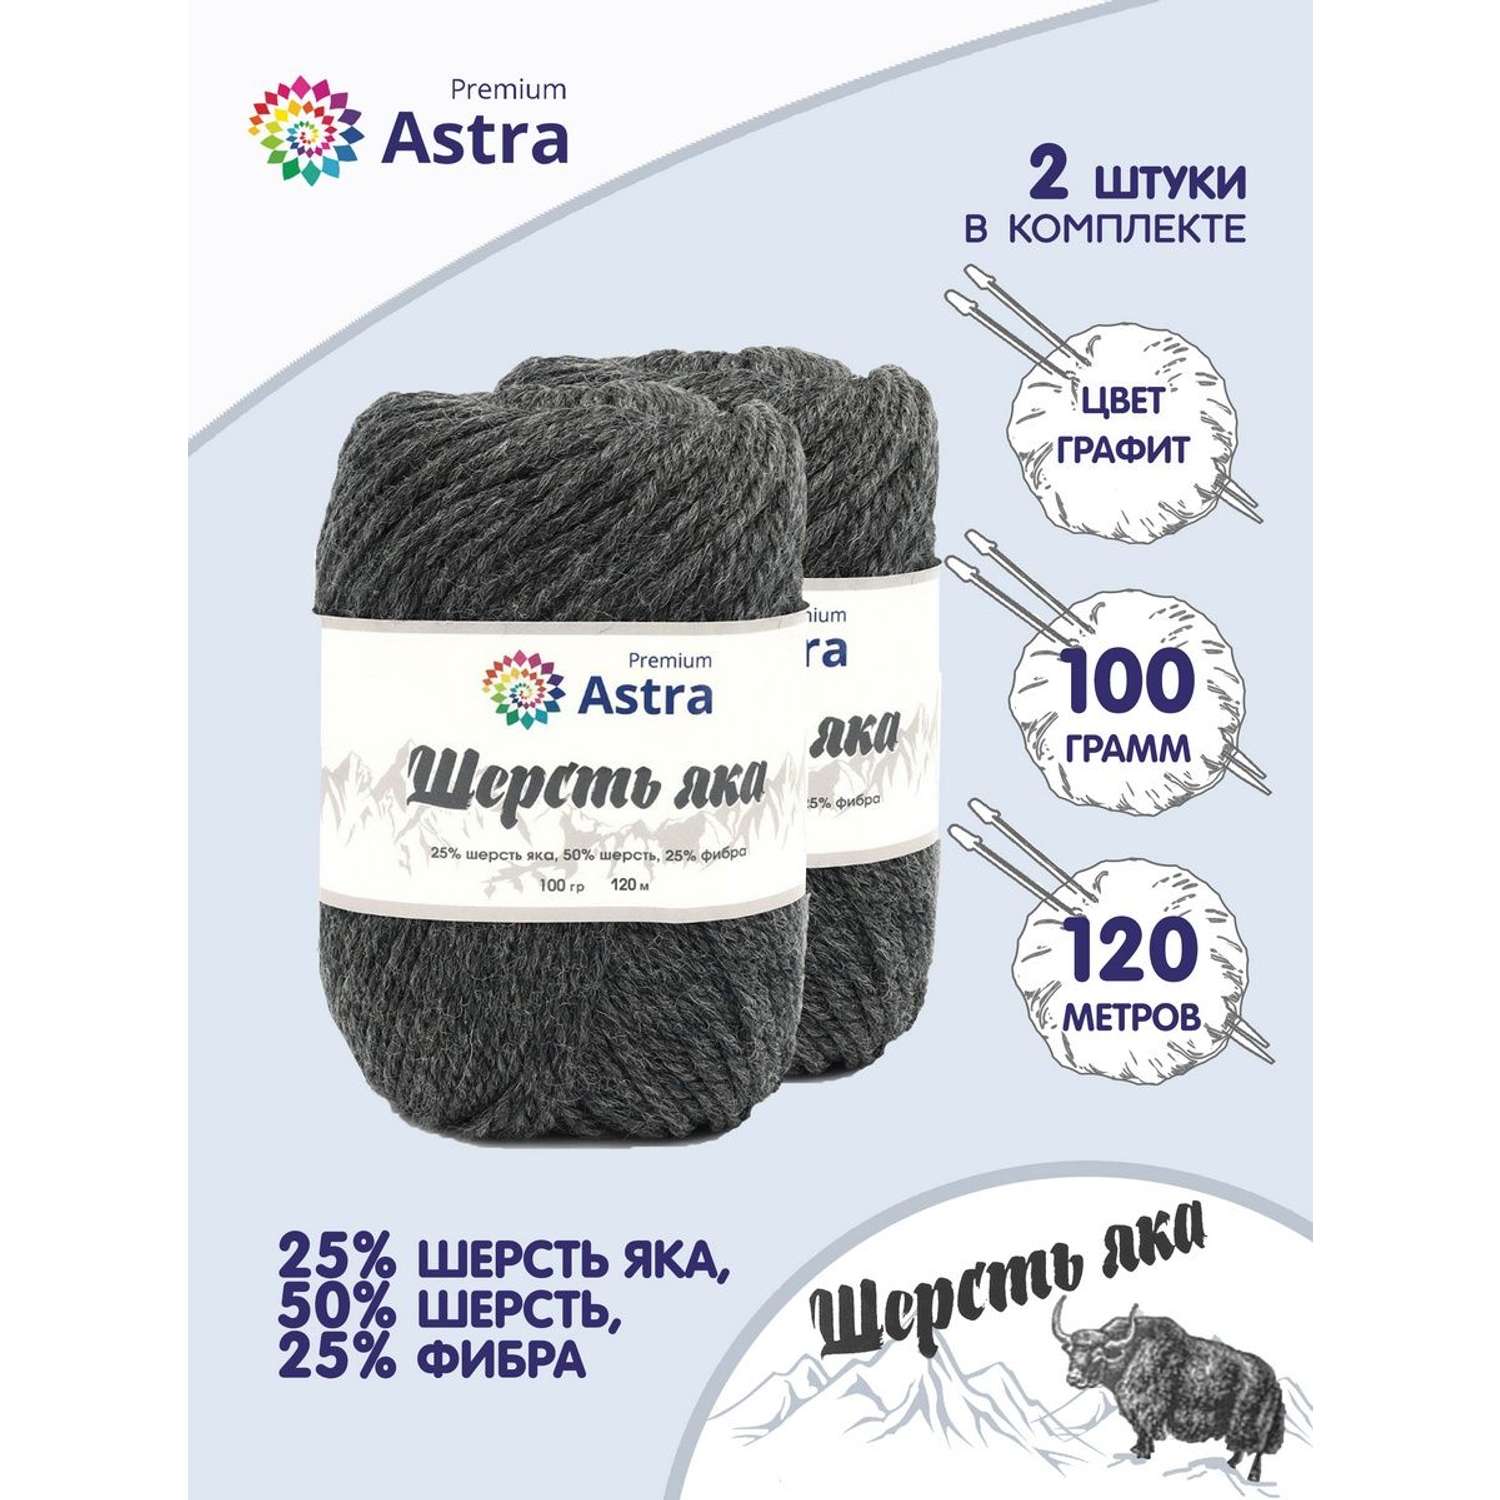 Пряжа Astra Premium Шерсть яка Yak wool теплая мягкая 100 г 120 м 14 графит 2 мотка - фото 1